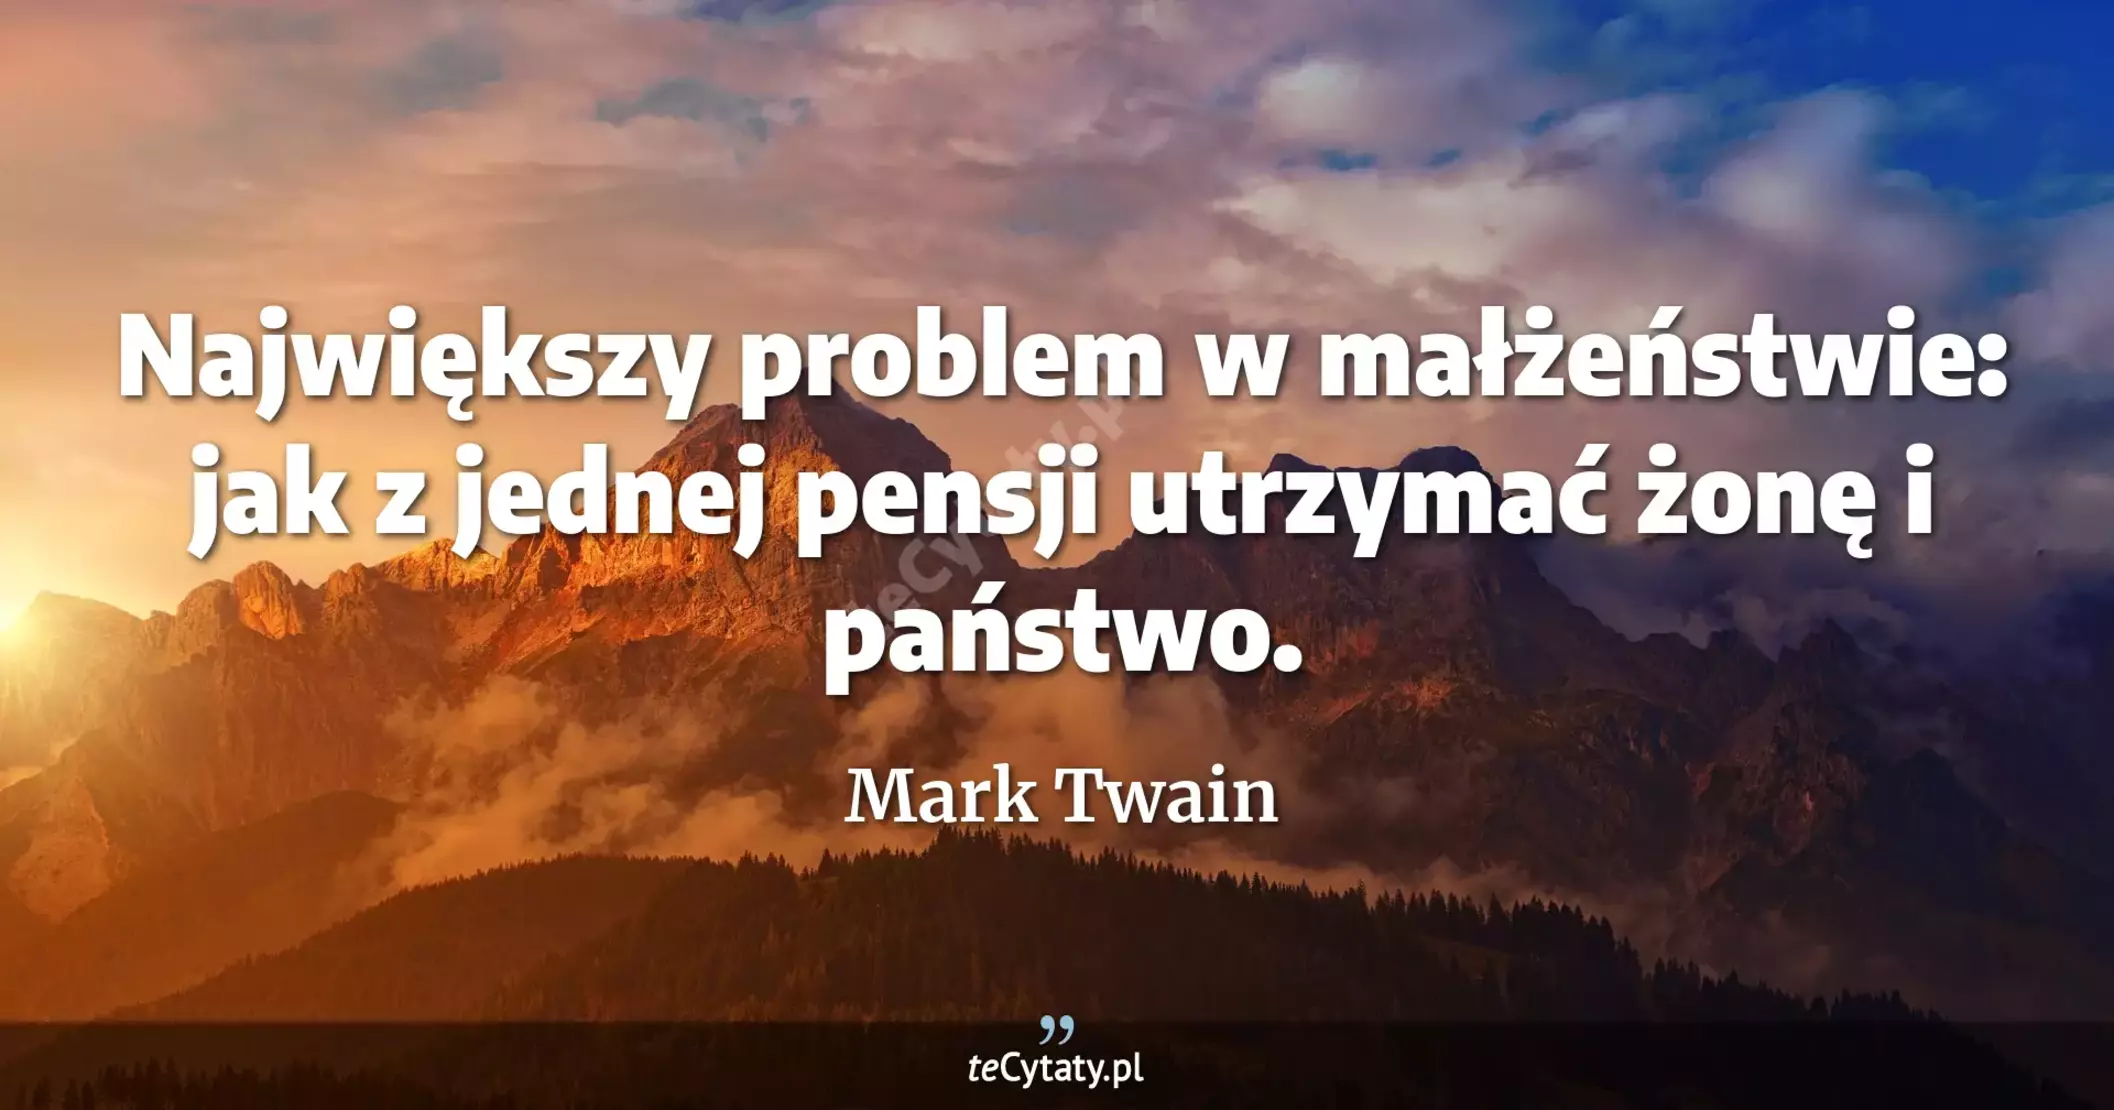 Największy problem w małżeństwie: jak z jednej pensji utrzymać żonę i państwo. - Mark Twain